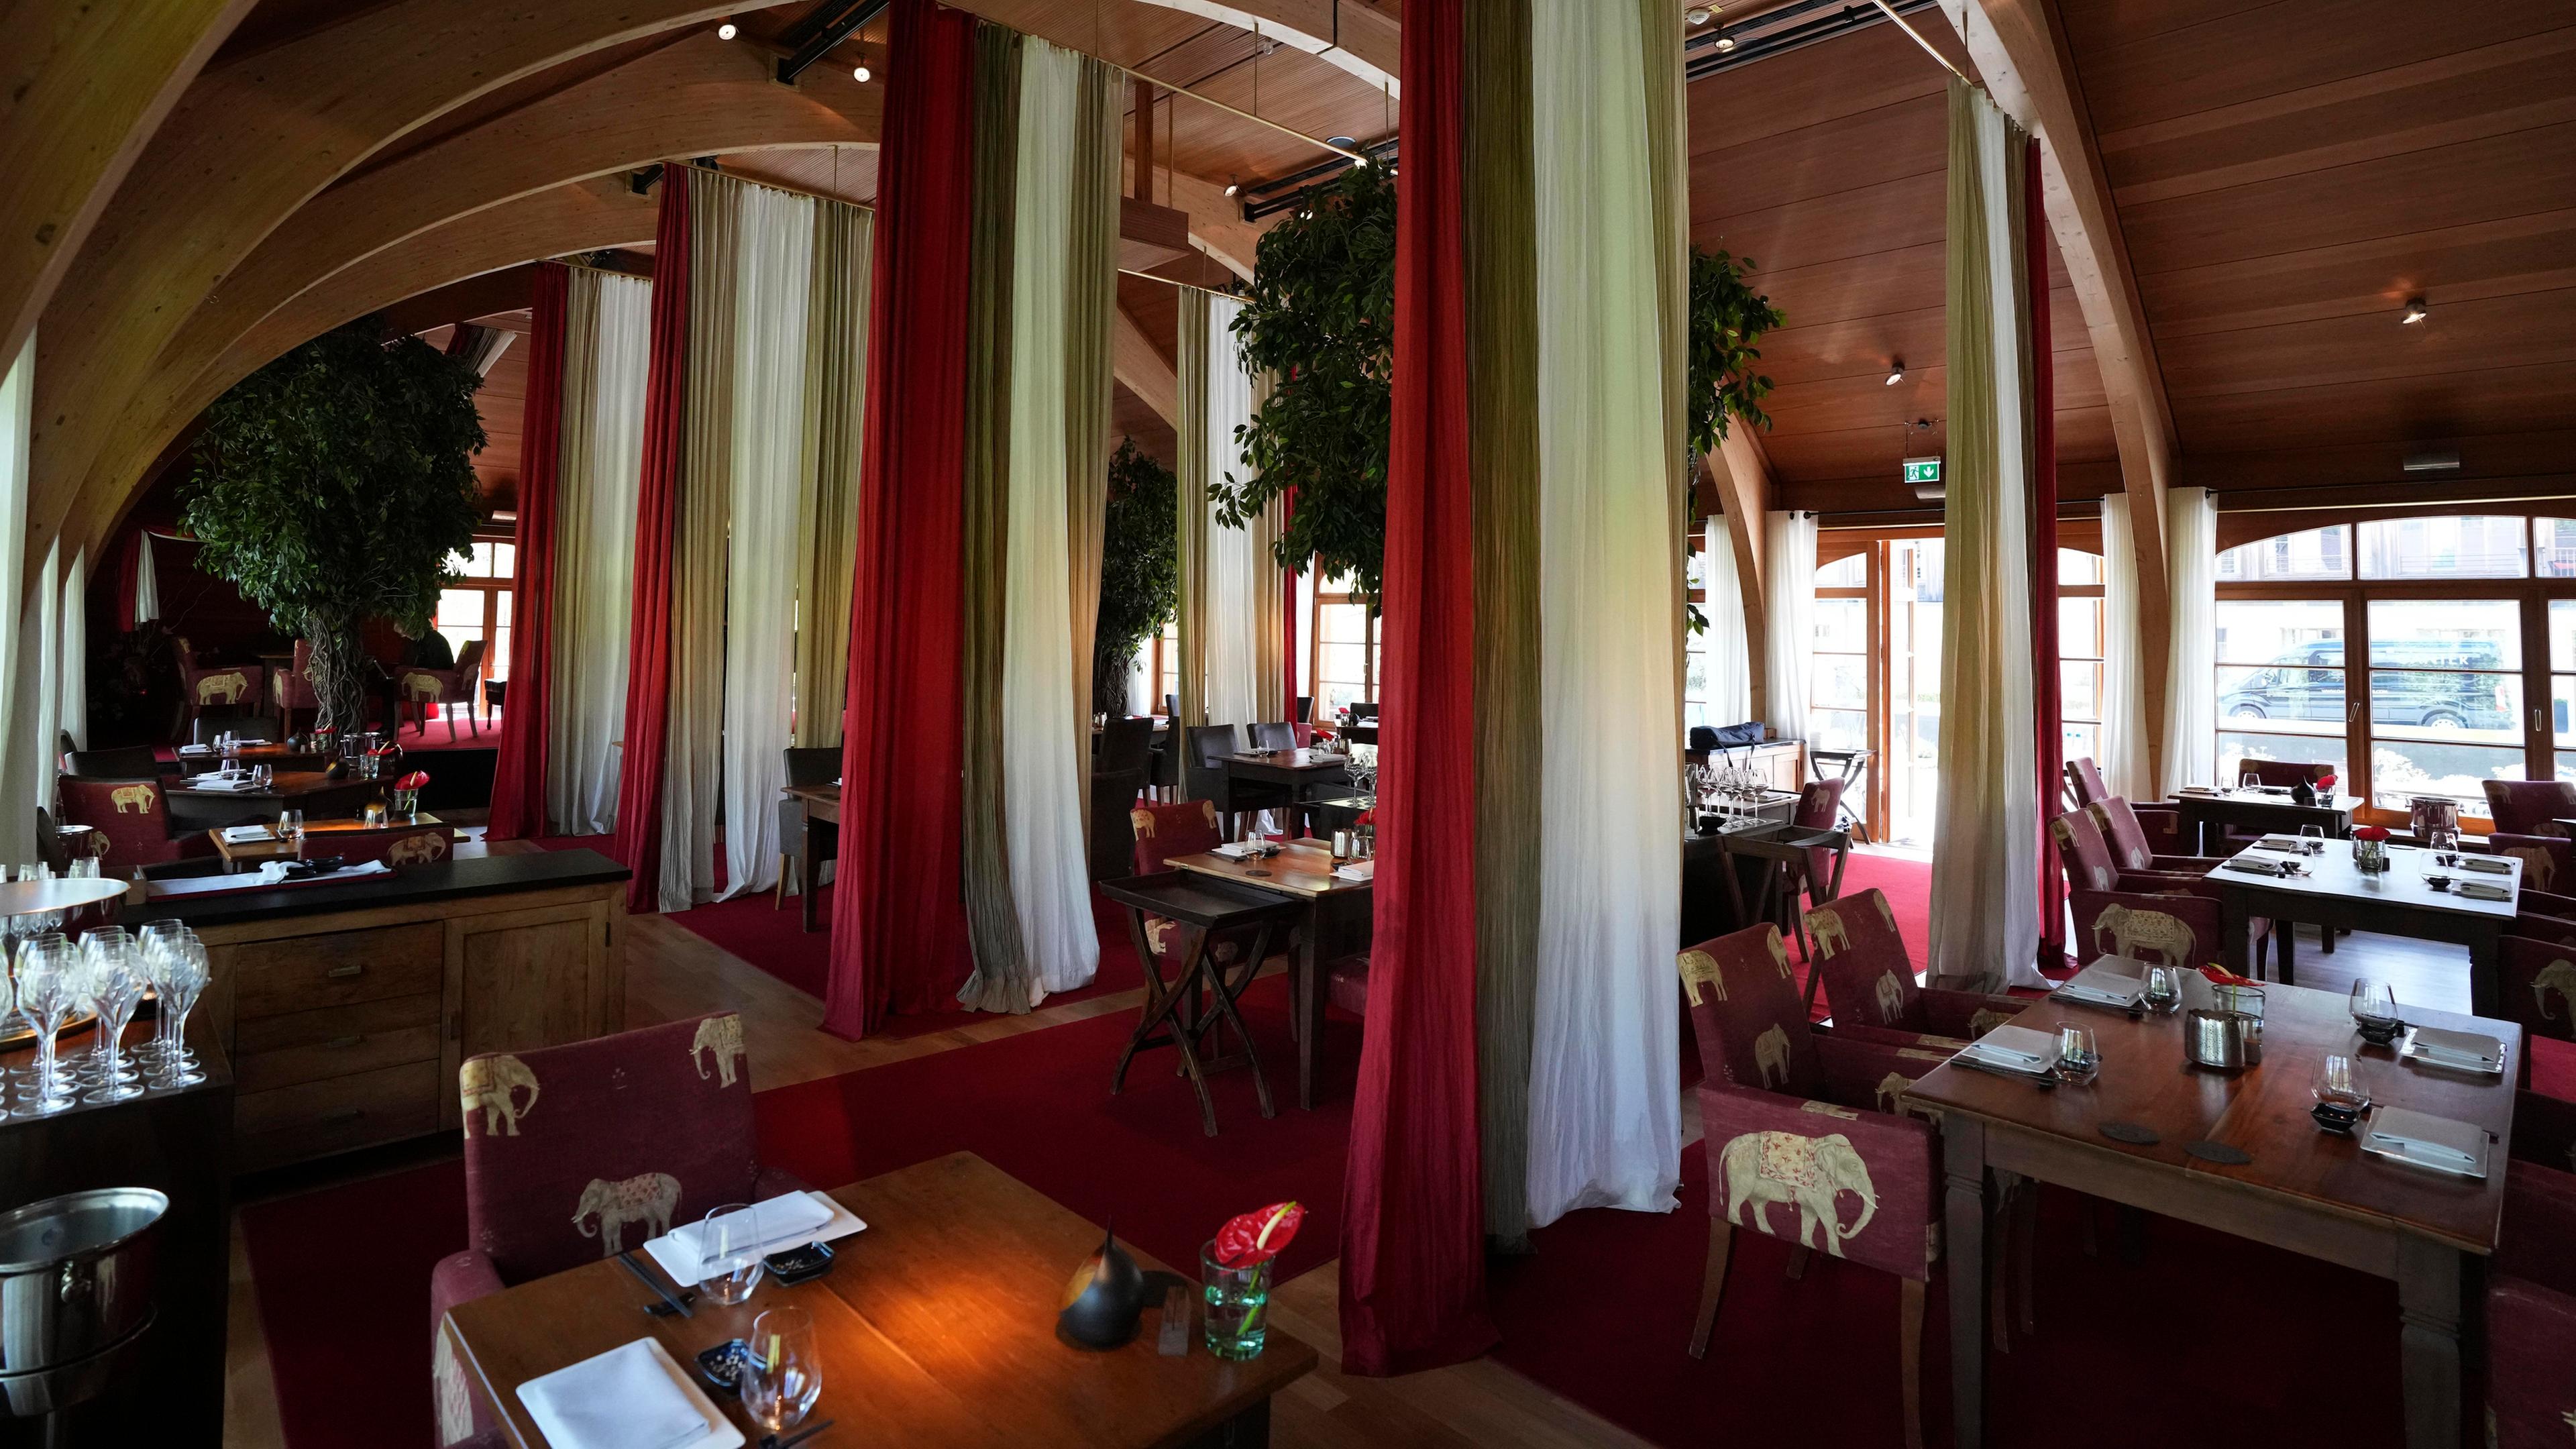 Das Restaurant Fidelio in Schloss Elmau